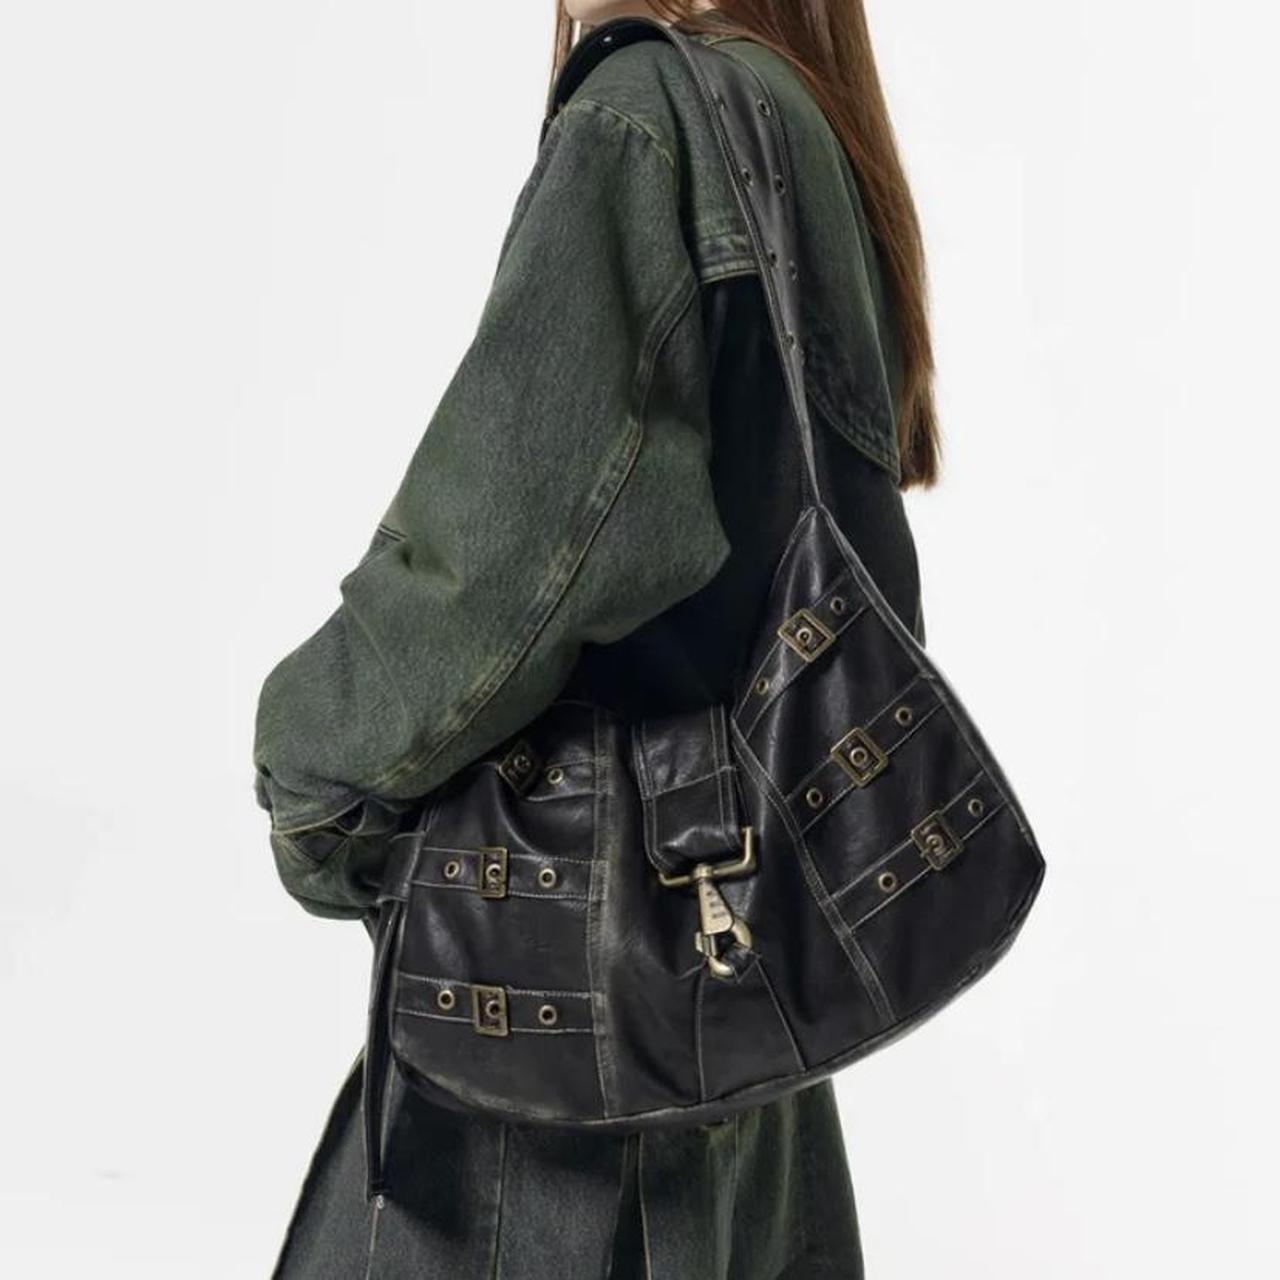 Grunge faux leather adjustable shoulder bag. Comes... - Depop